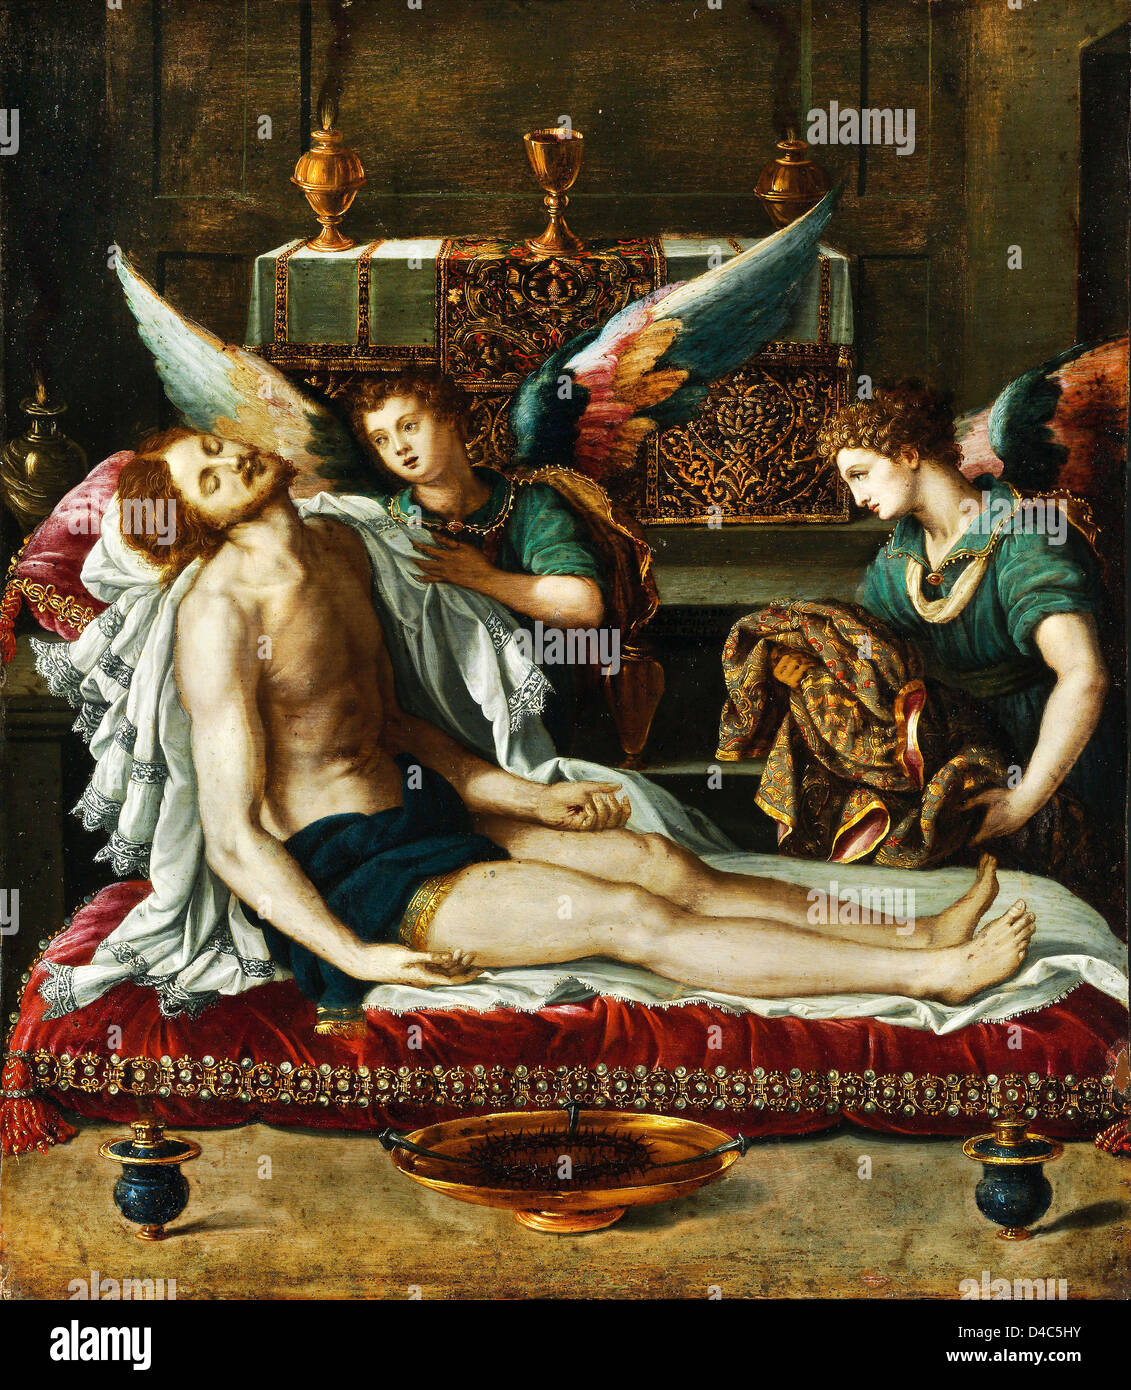 Alessandro Allori, den Körper von Christus gesalbt von zwei Engeln. Ca. 1593 Öl auf Leinwand. Museum of Fine Arts, Budapest Stockfoto